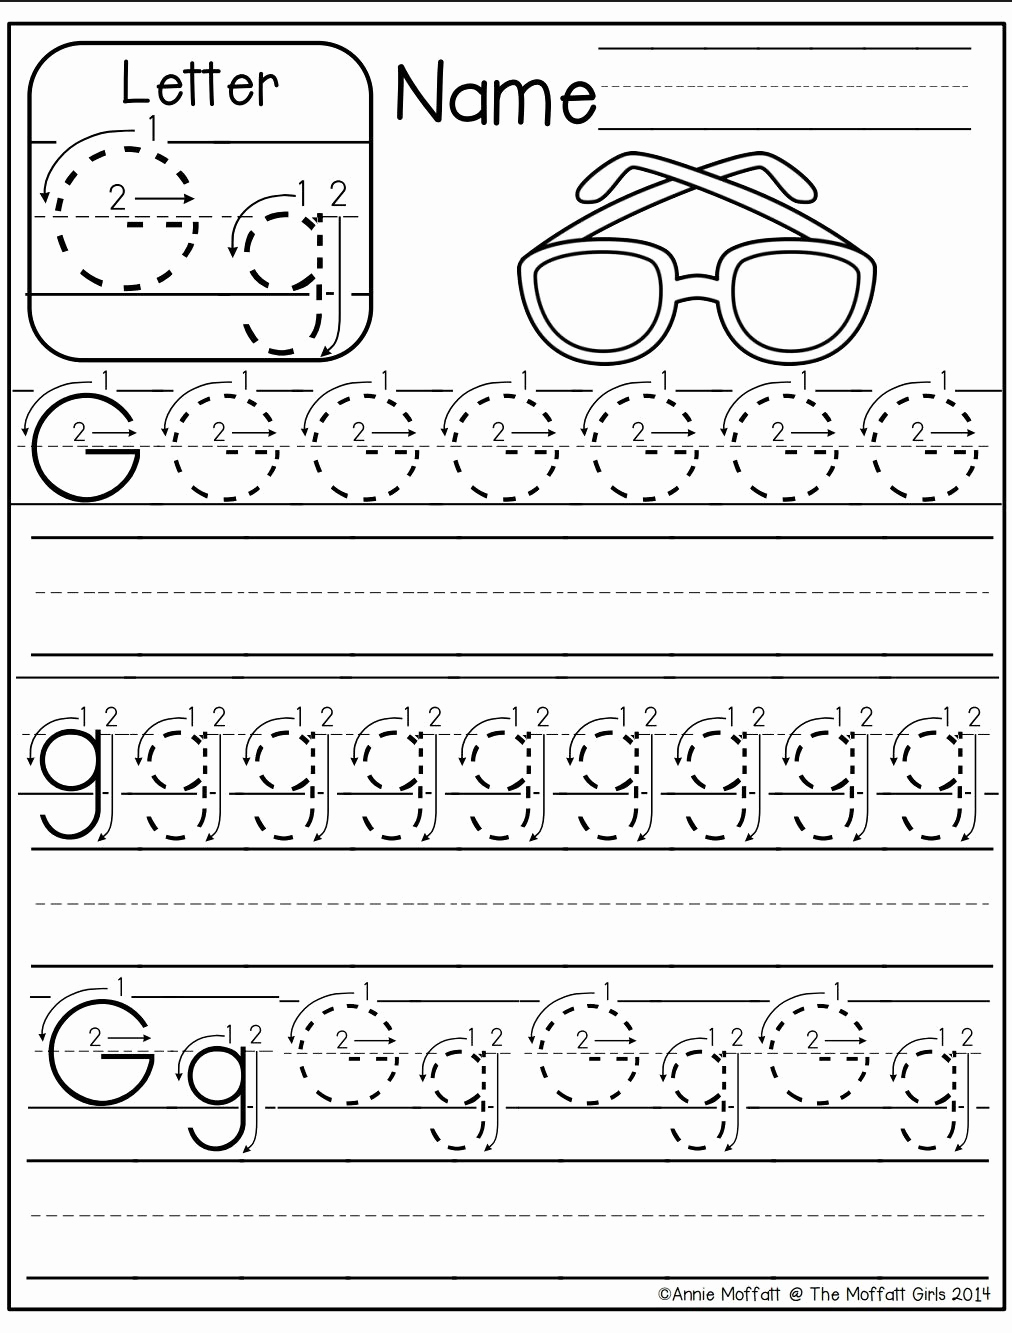 Letter G Worksheets for Kindergarten Fresh Letter G Worksheet